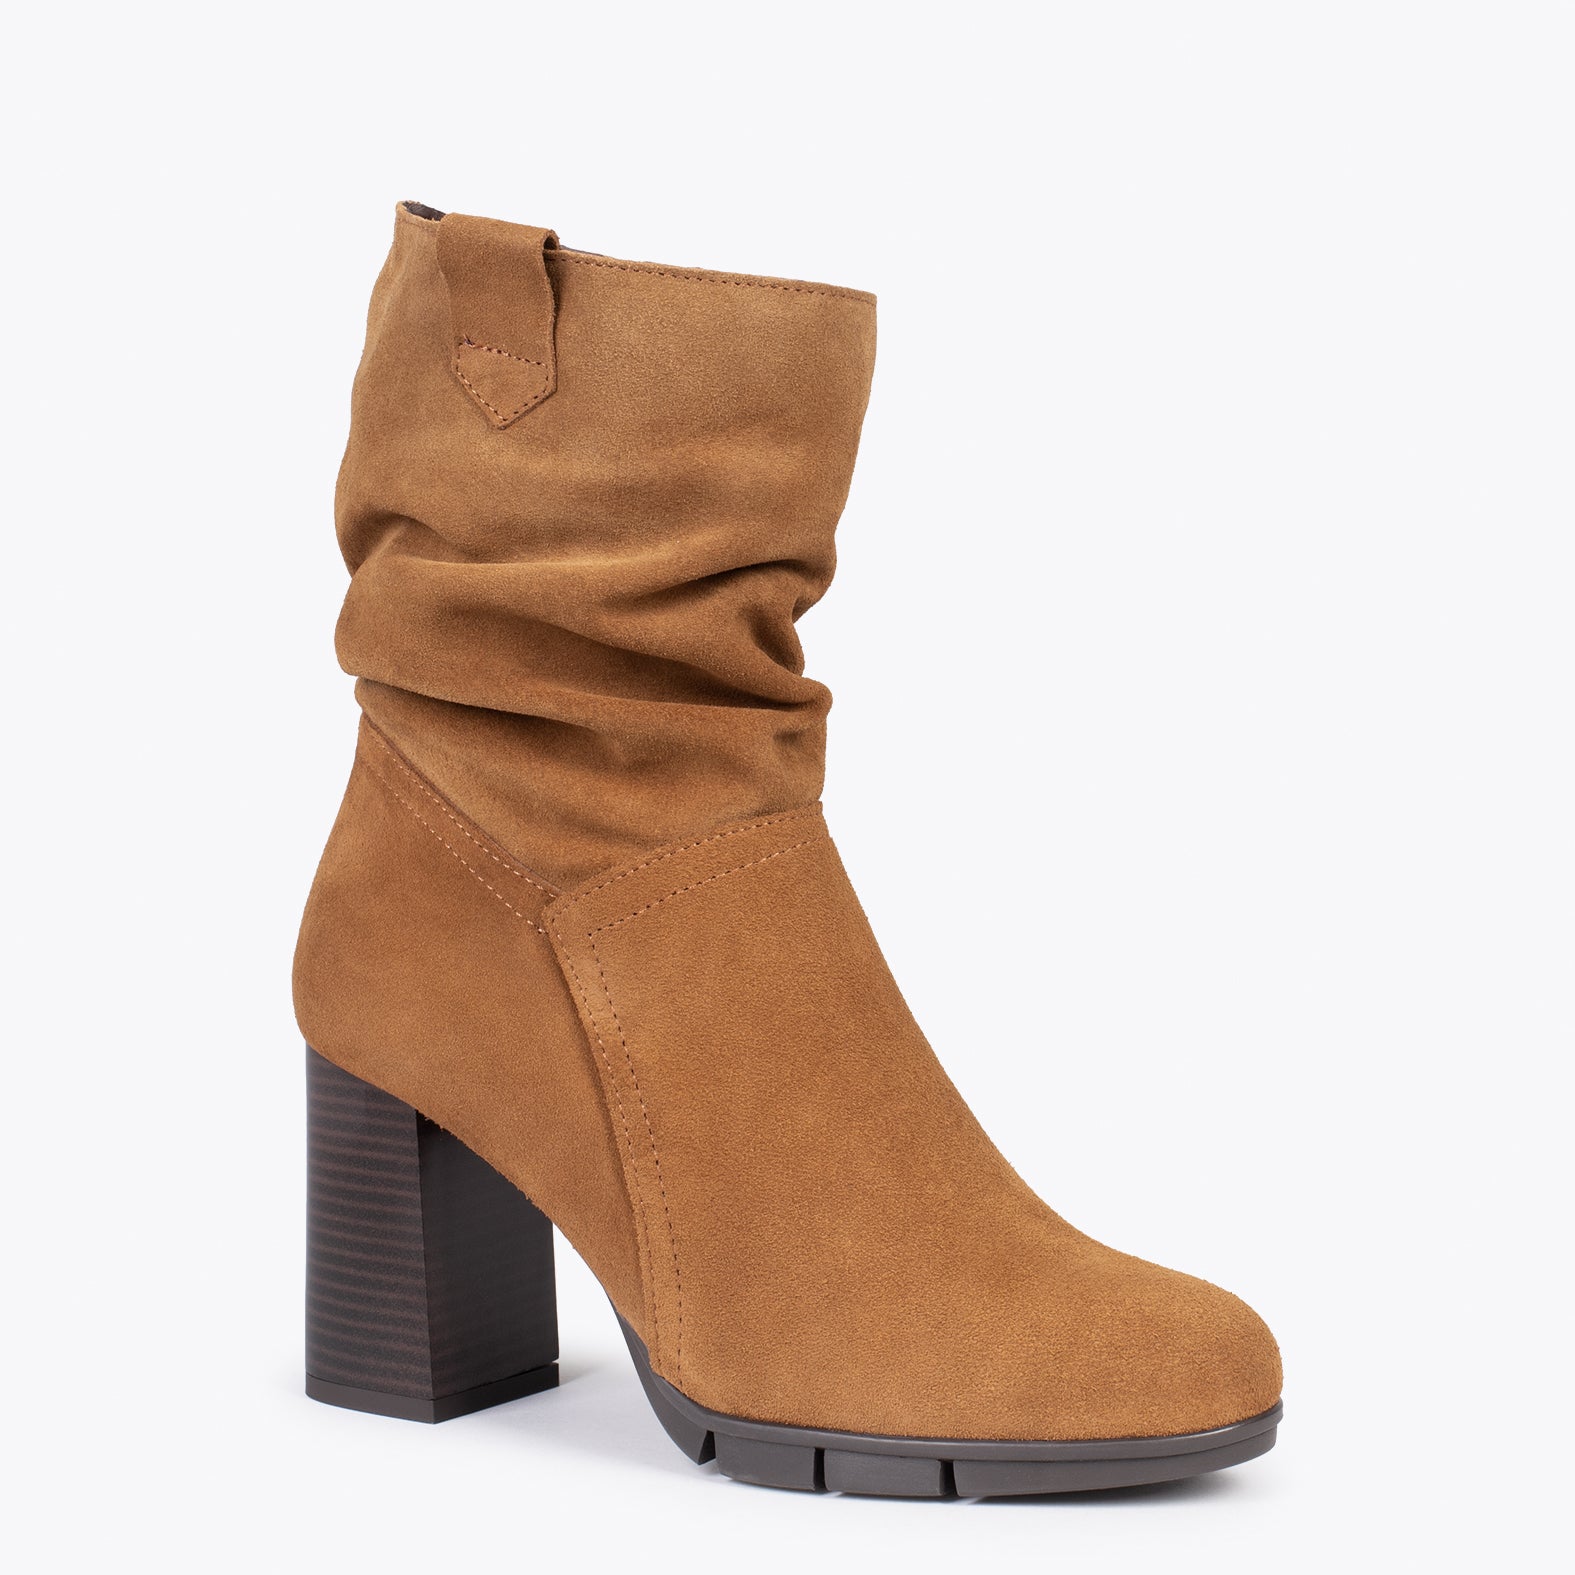 WAVE – CAMEL high heel booties with zipper